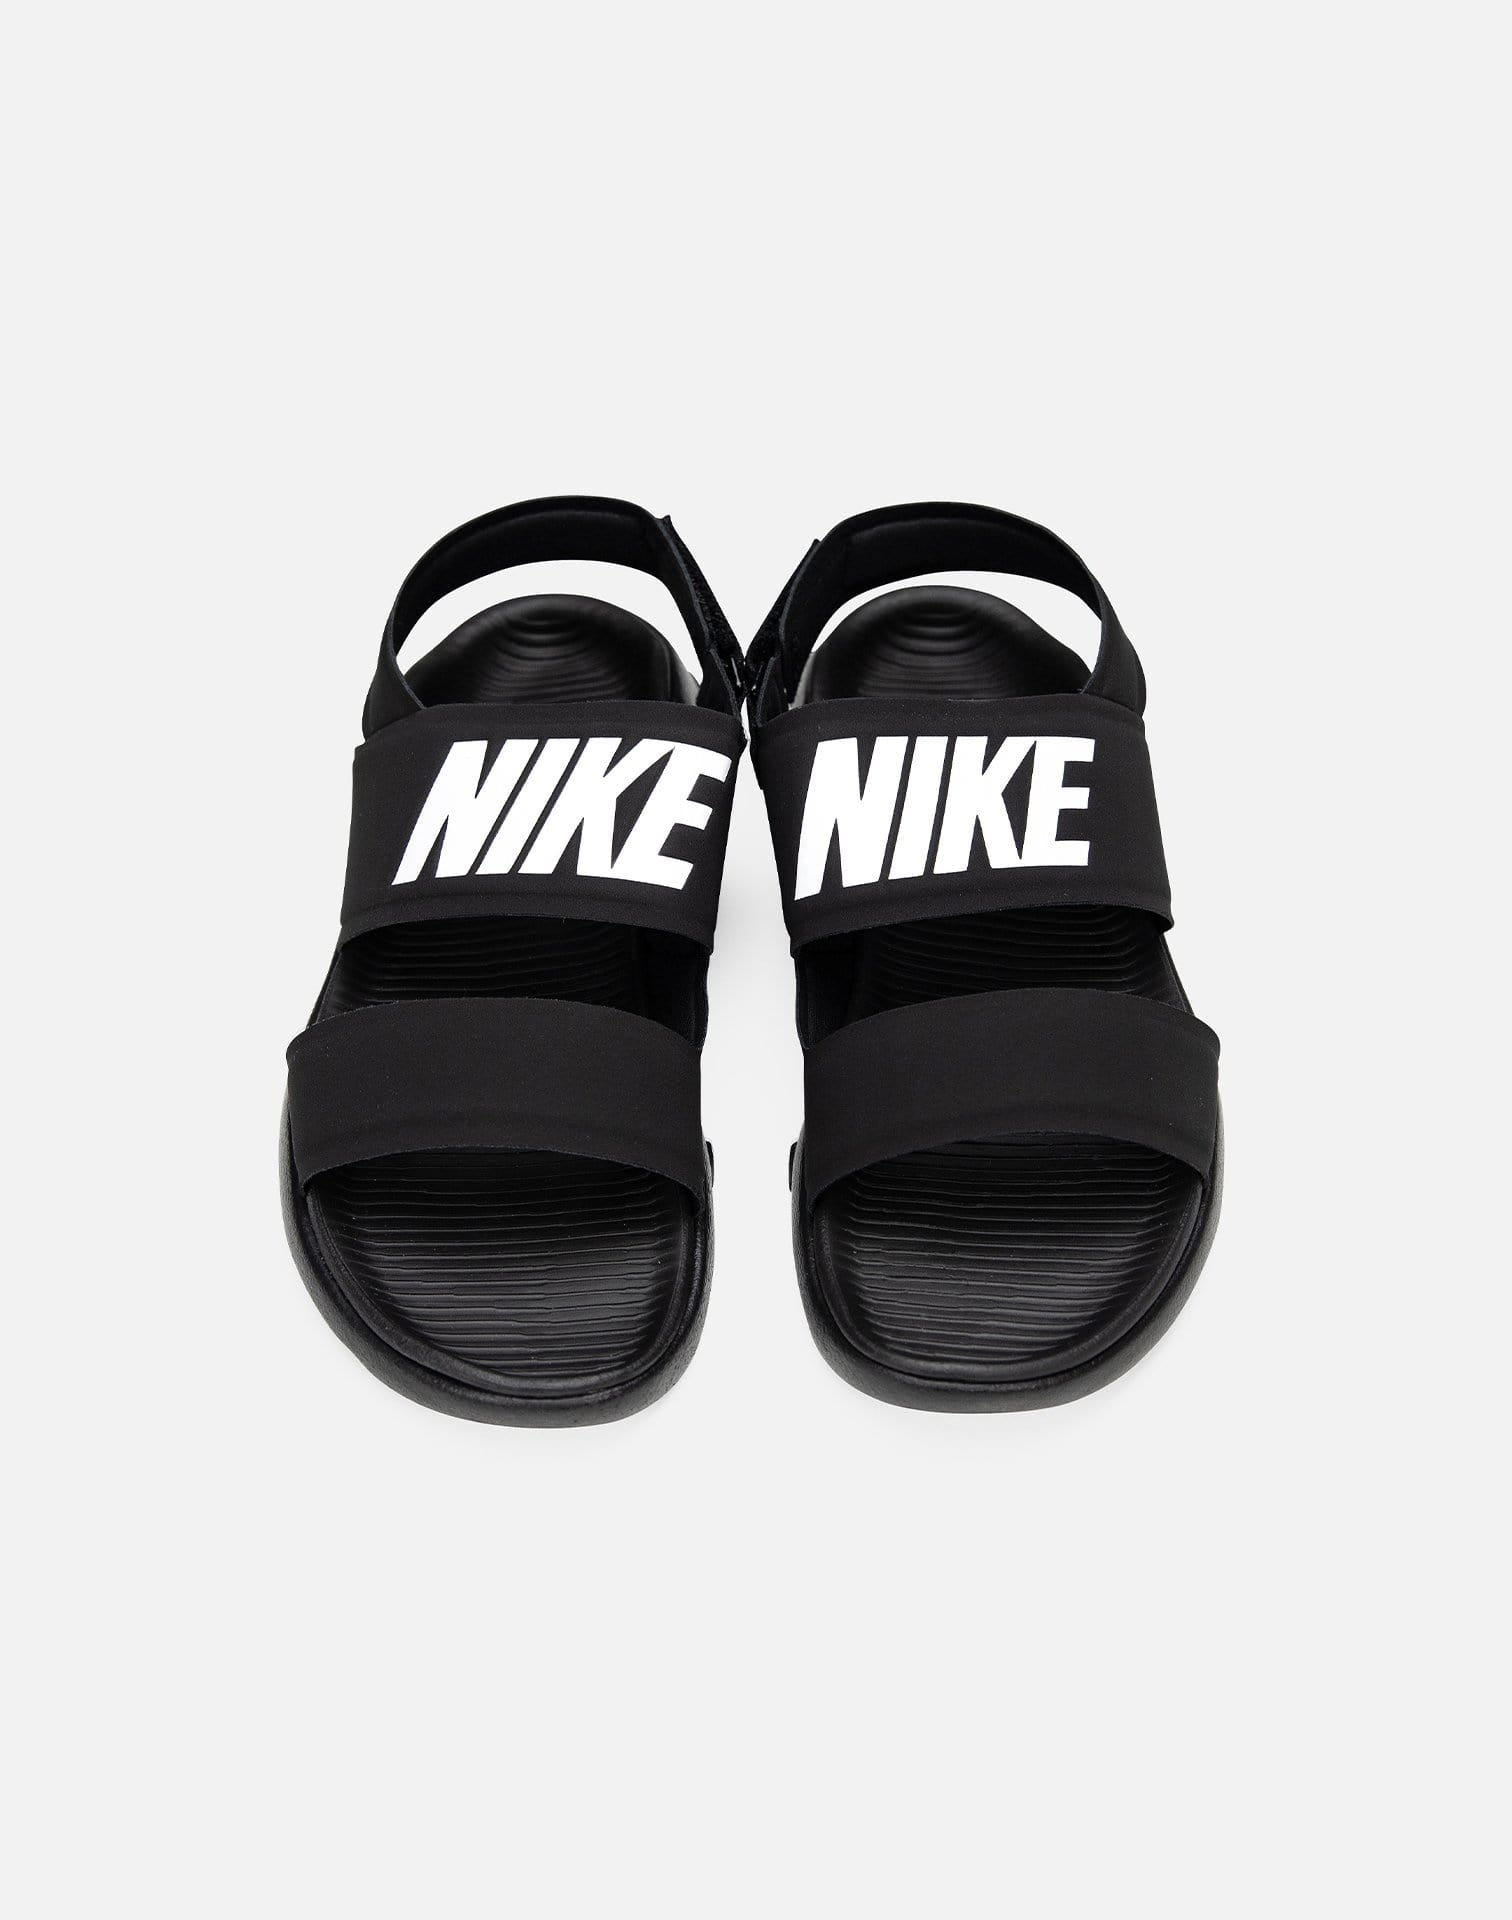 Nike Sandals – DTLR